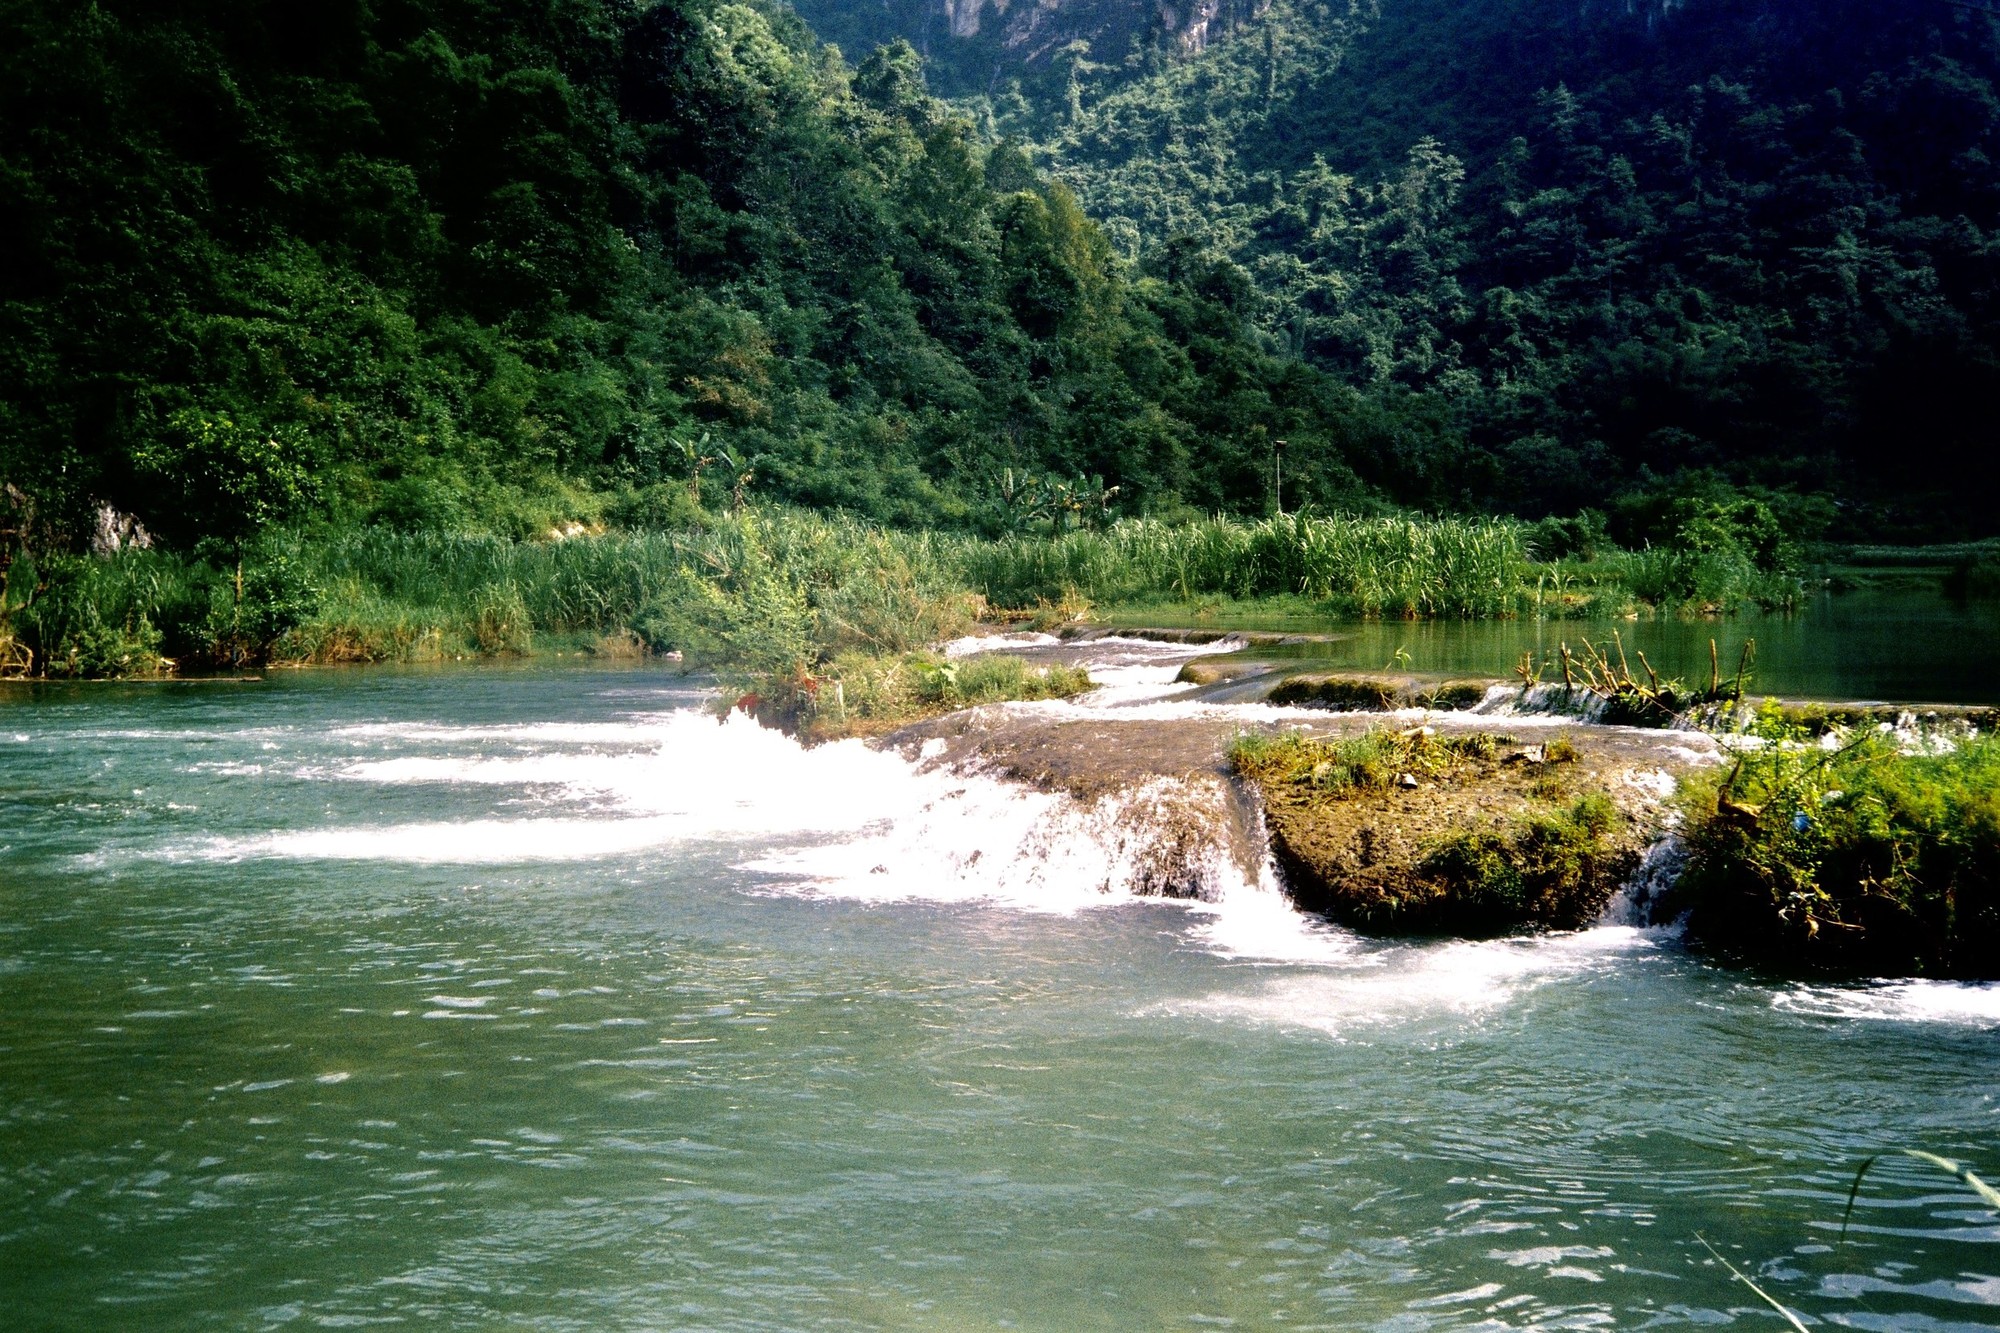 Không chỉ ngắm nhìn dòng suối chảy từ trên cao, du khách còn được chiêm ngưỡng dòng sông Quây Sơn sóng sánh một màu xanh ngọc, vô cùng tinh khiết và mát mẻ. Ảnh: Thu Trang